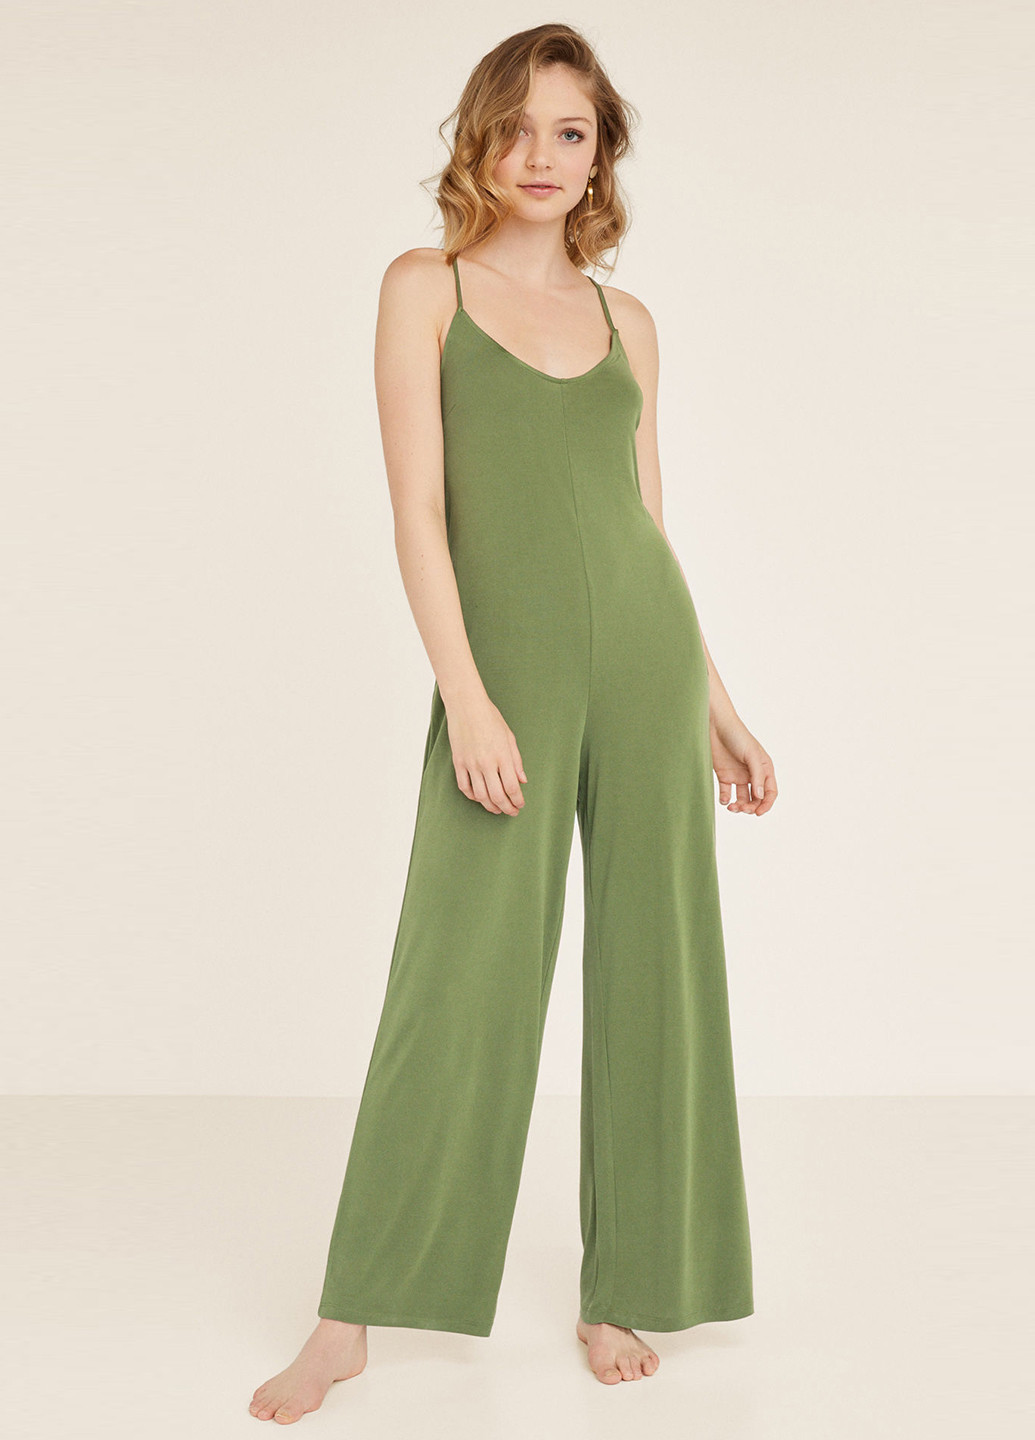 Комбінезон Women'secret комбінезон-брюки однотонний світло-зелений домашній трикотаж